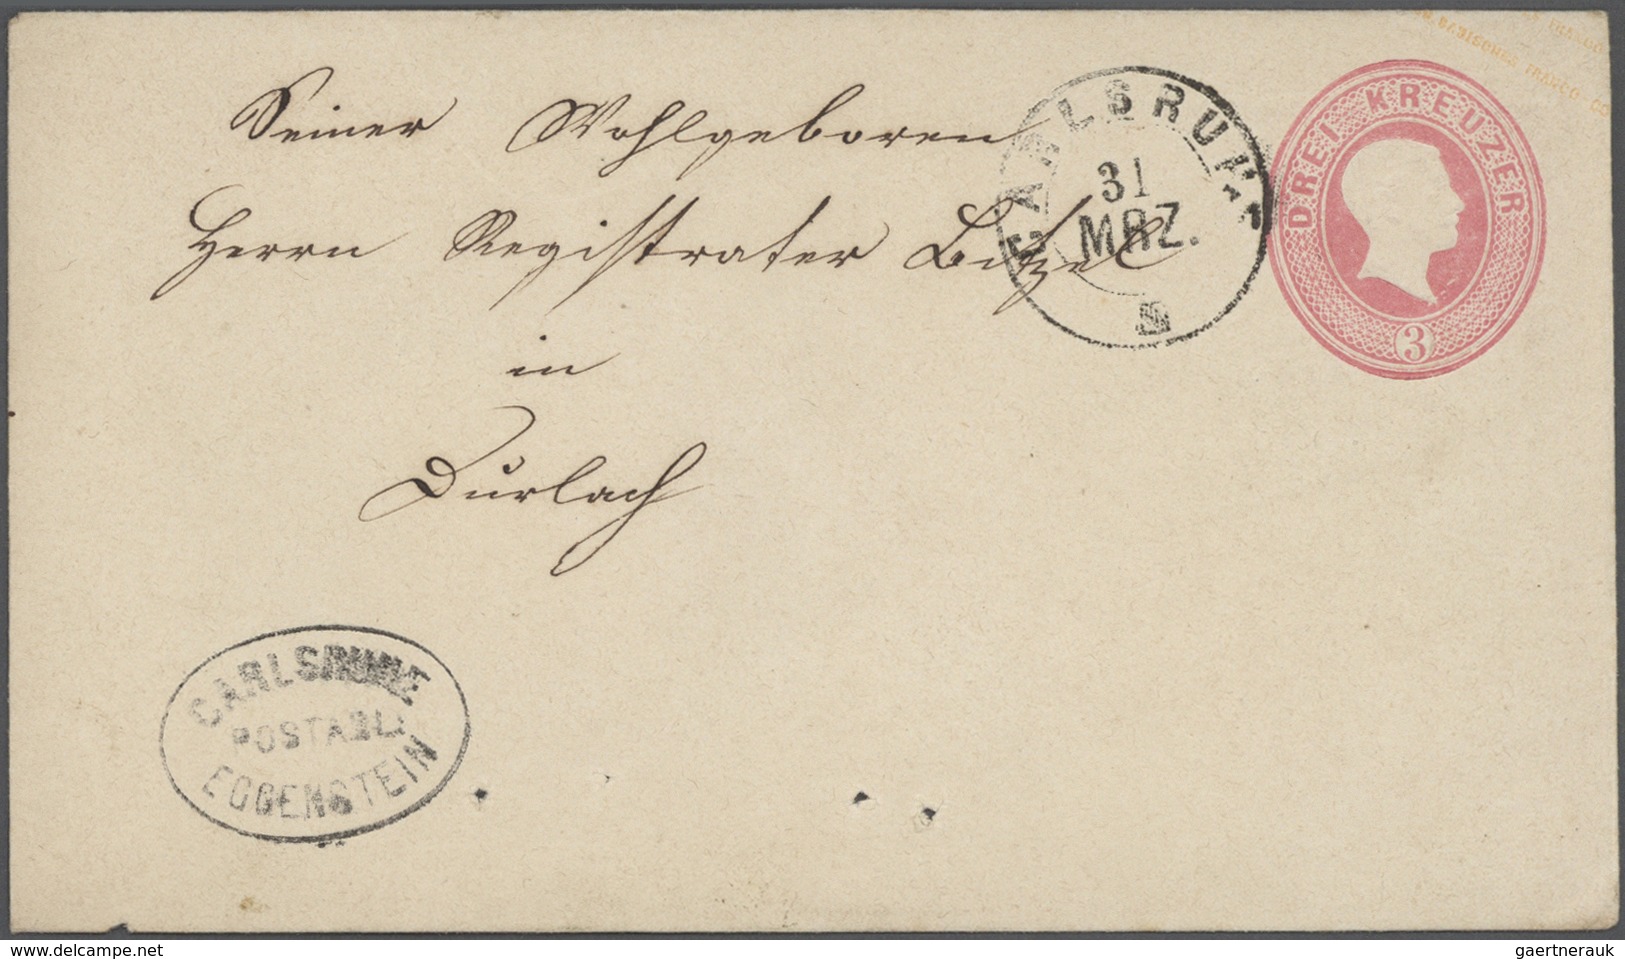 Altdeutschland: 1820/1920, ca. 140 Briefe, Karten und Ganzsachen ab Vorphila mit meist einfachen Fra